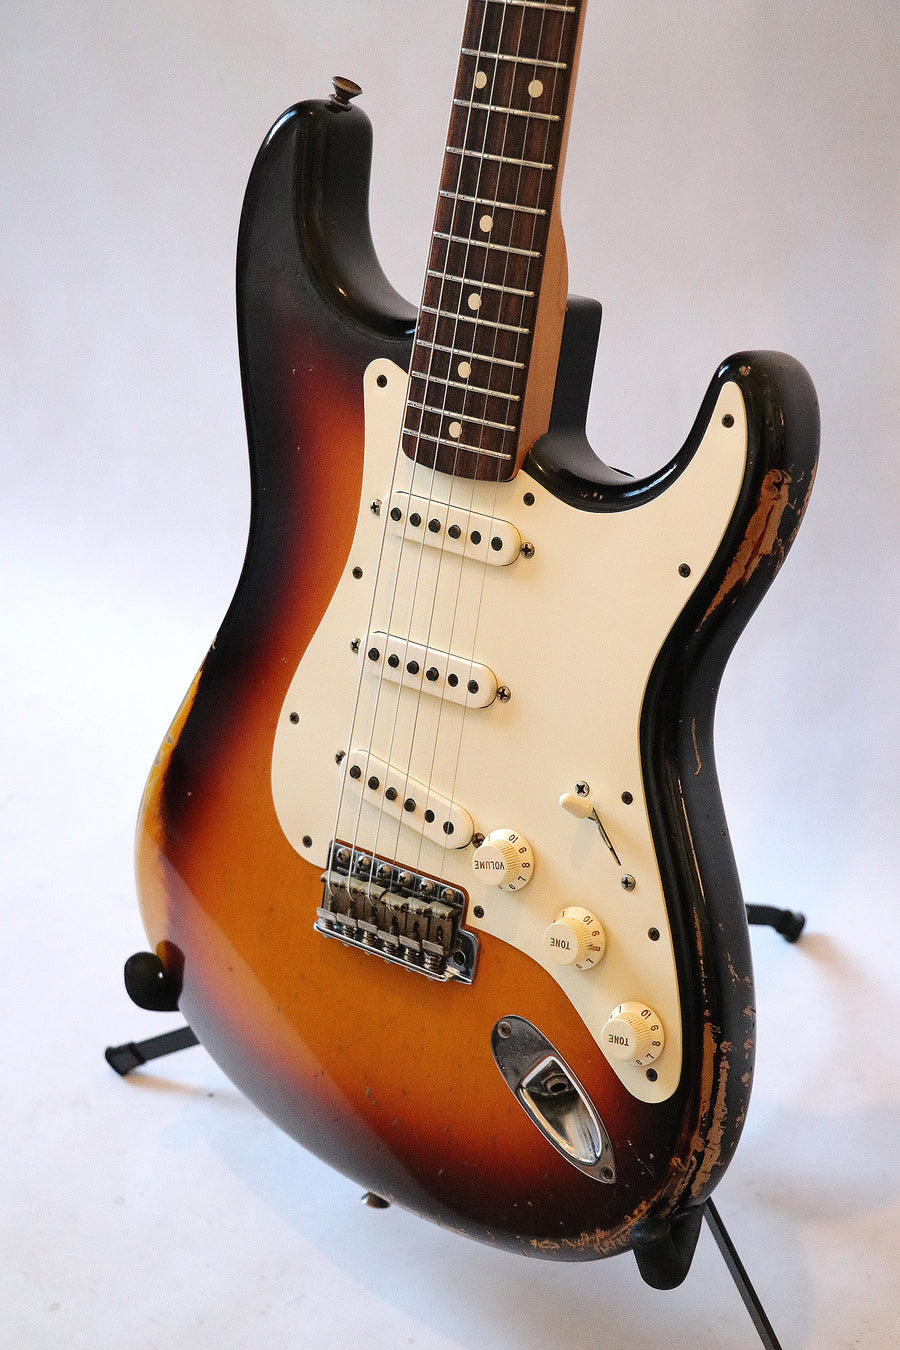 Fender Stratocaster Masterbuilt 1959 Greg Fessler 2013